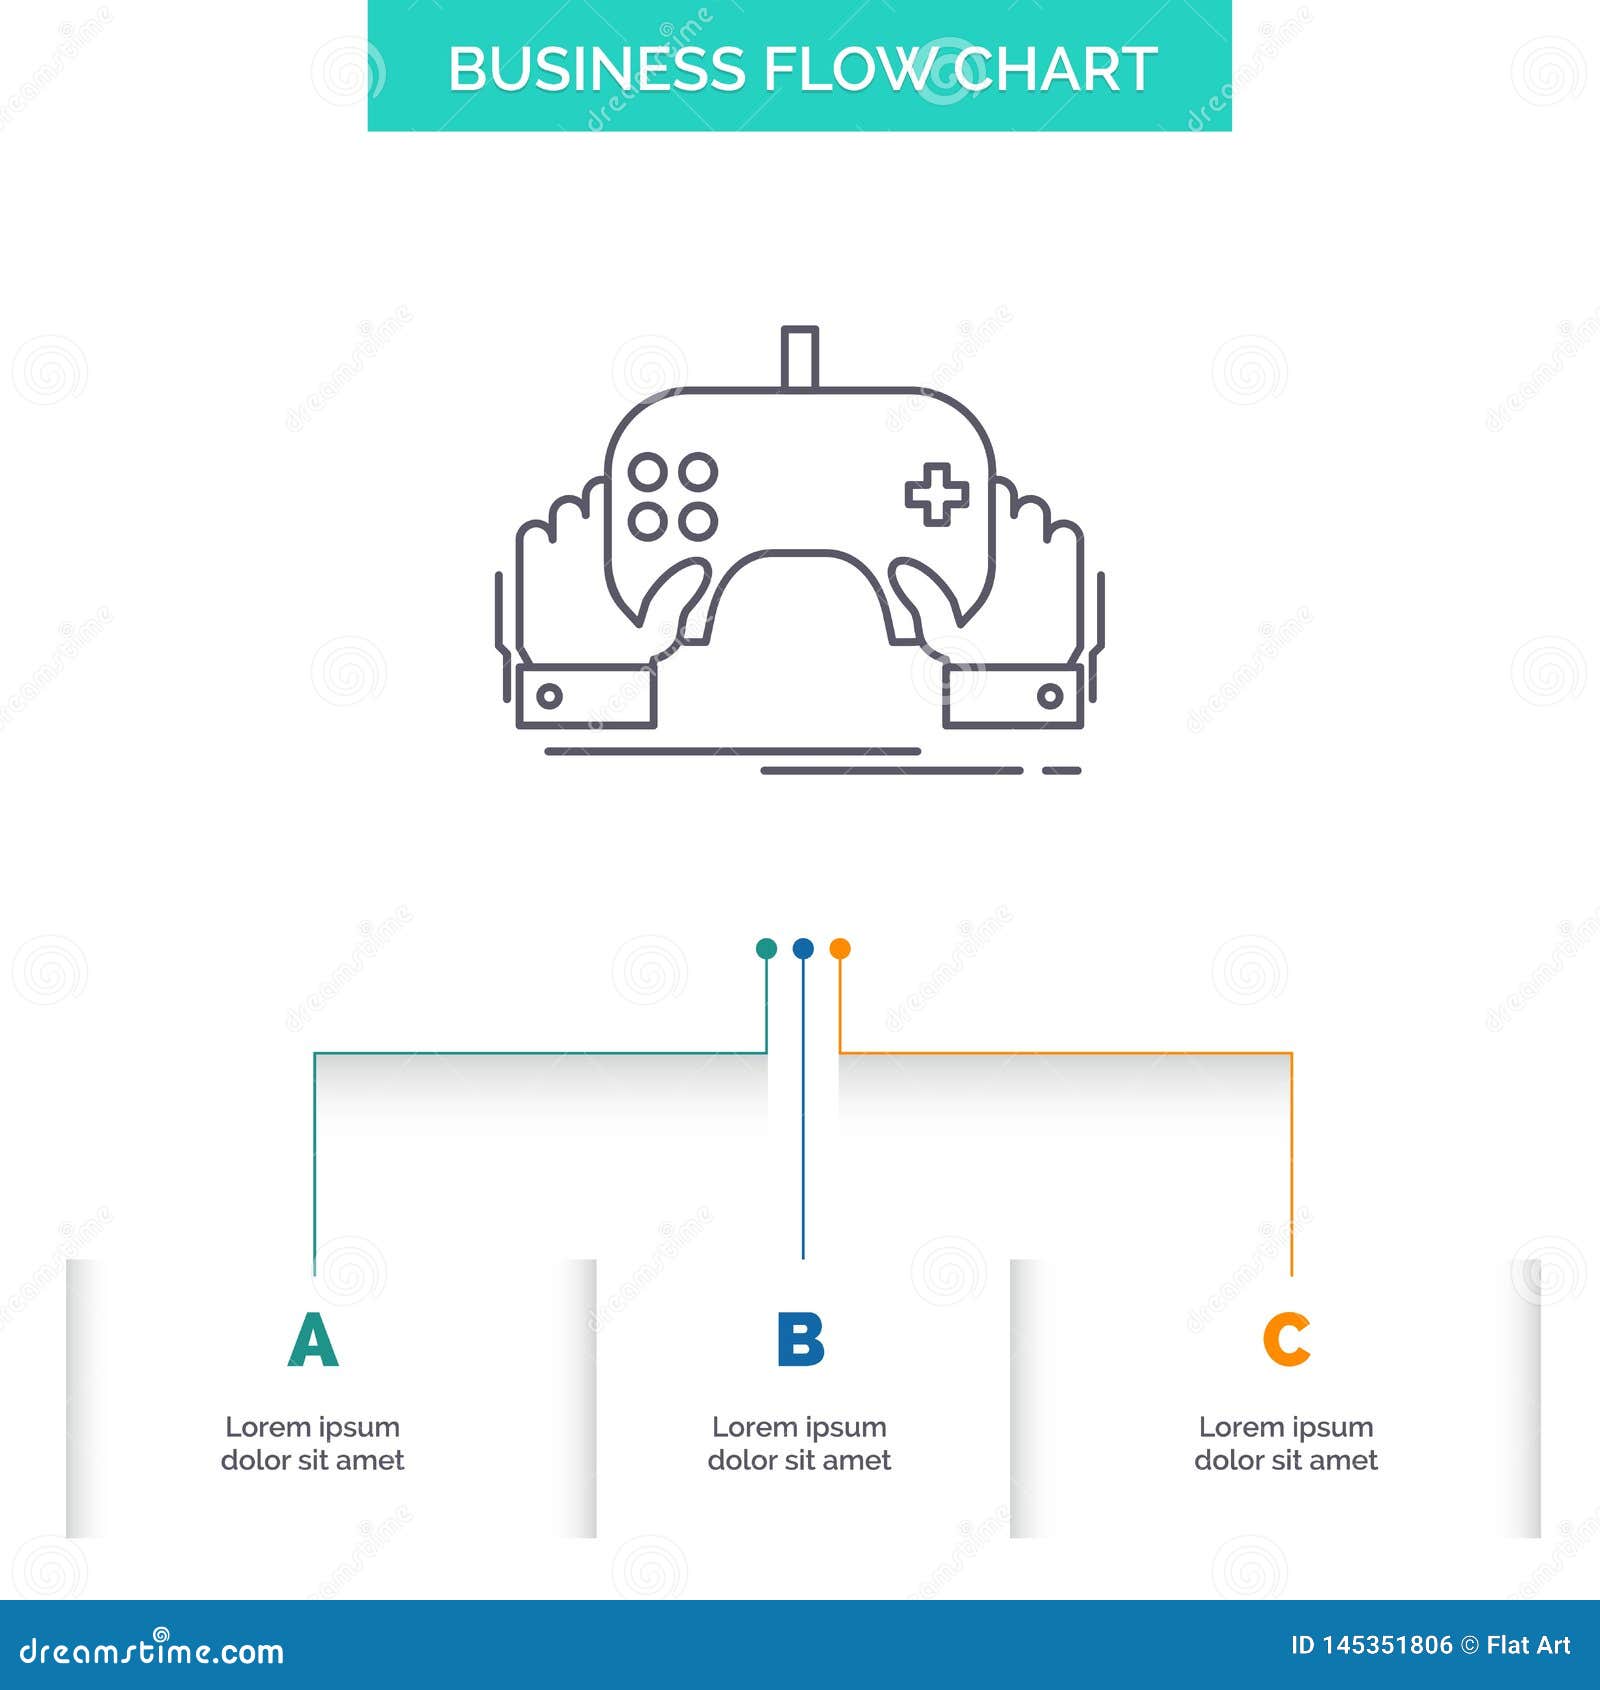 App Flow Chart Template